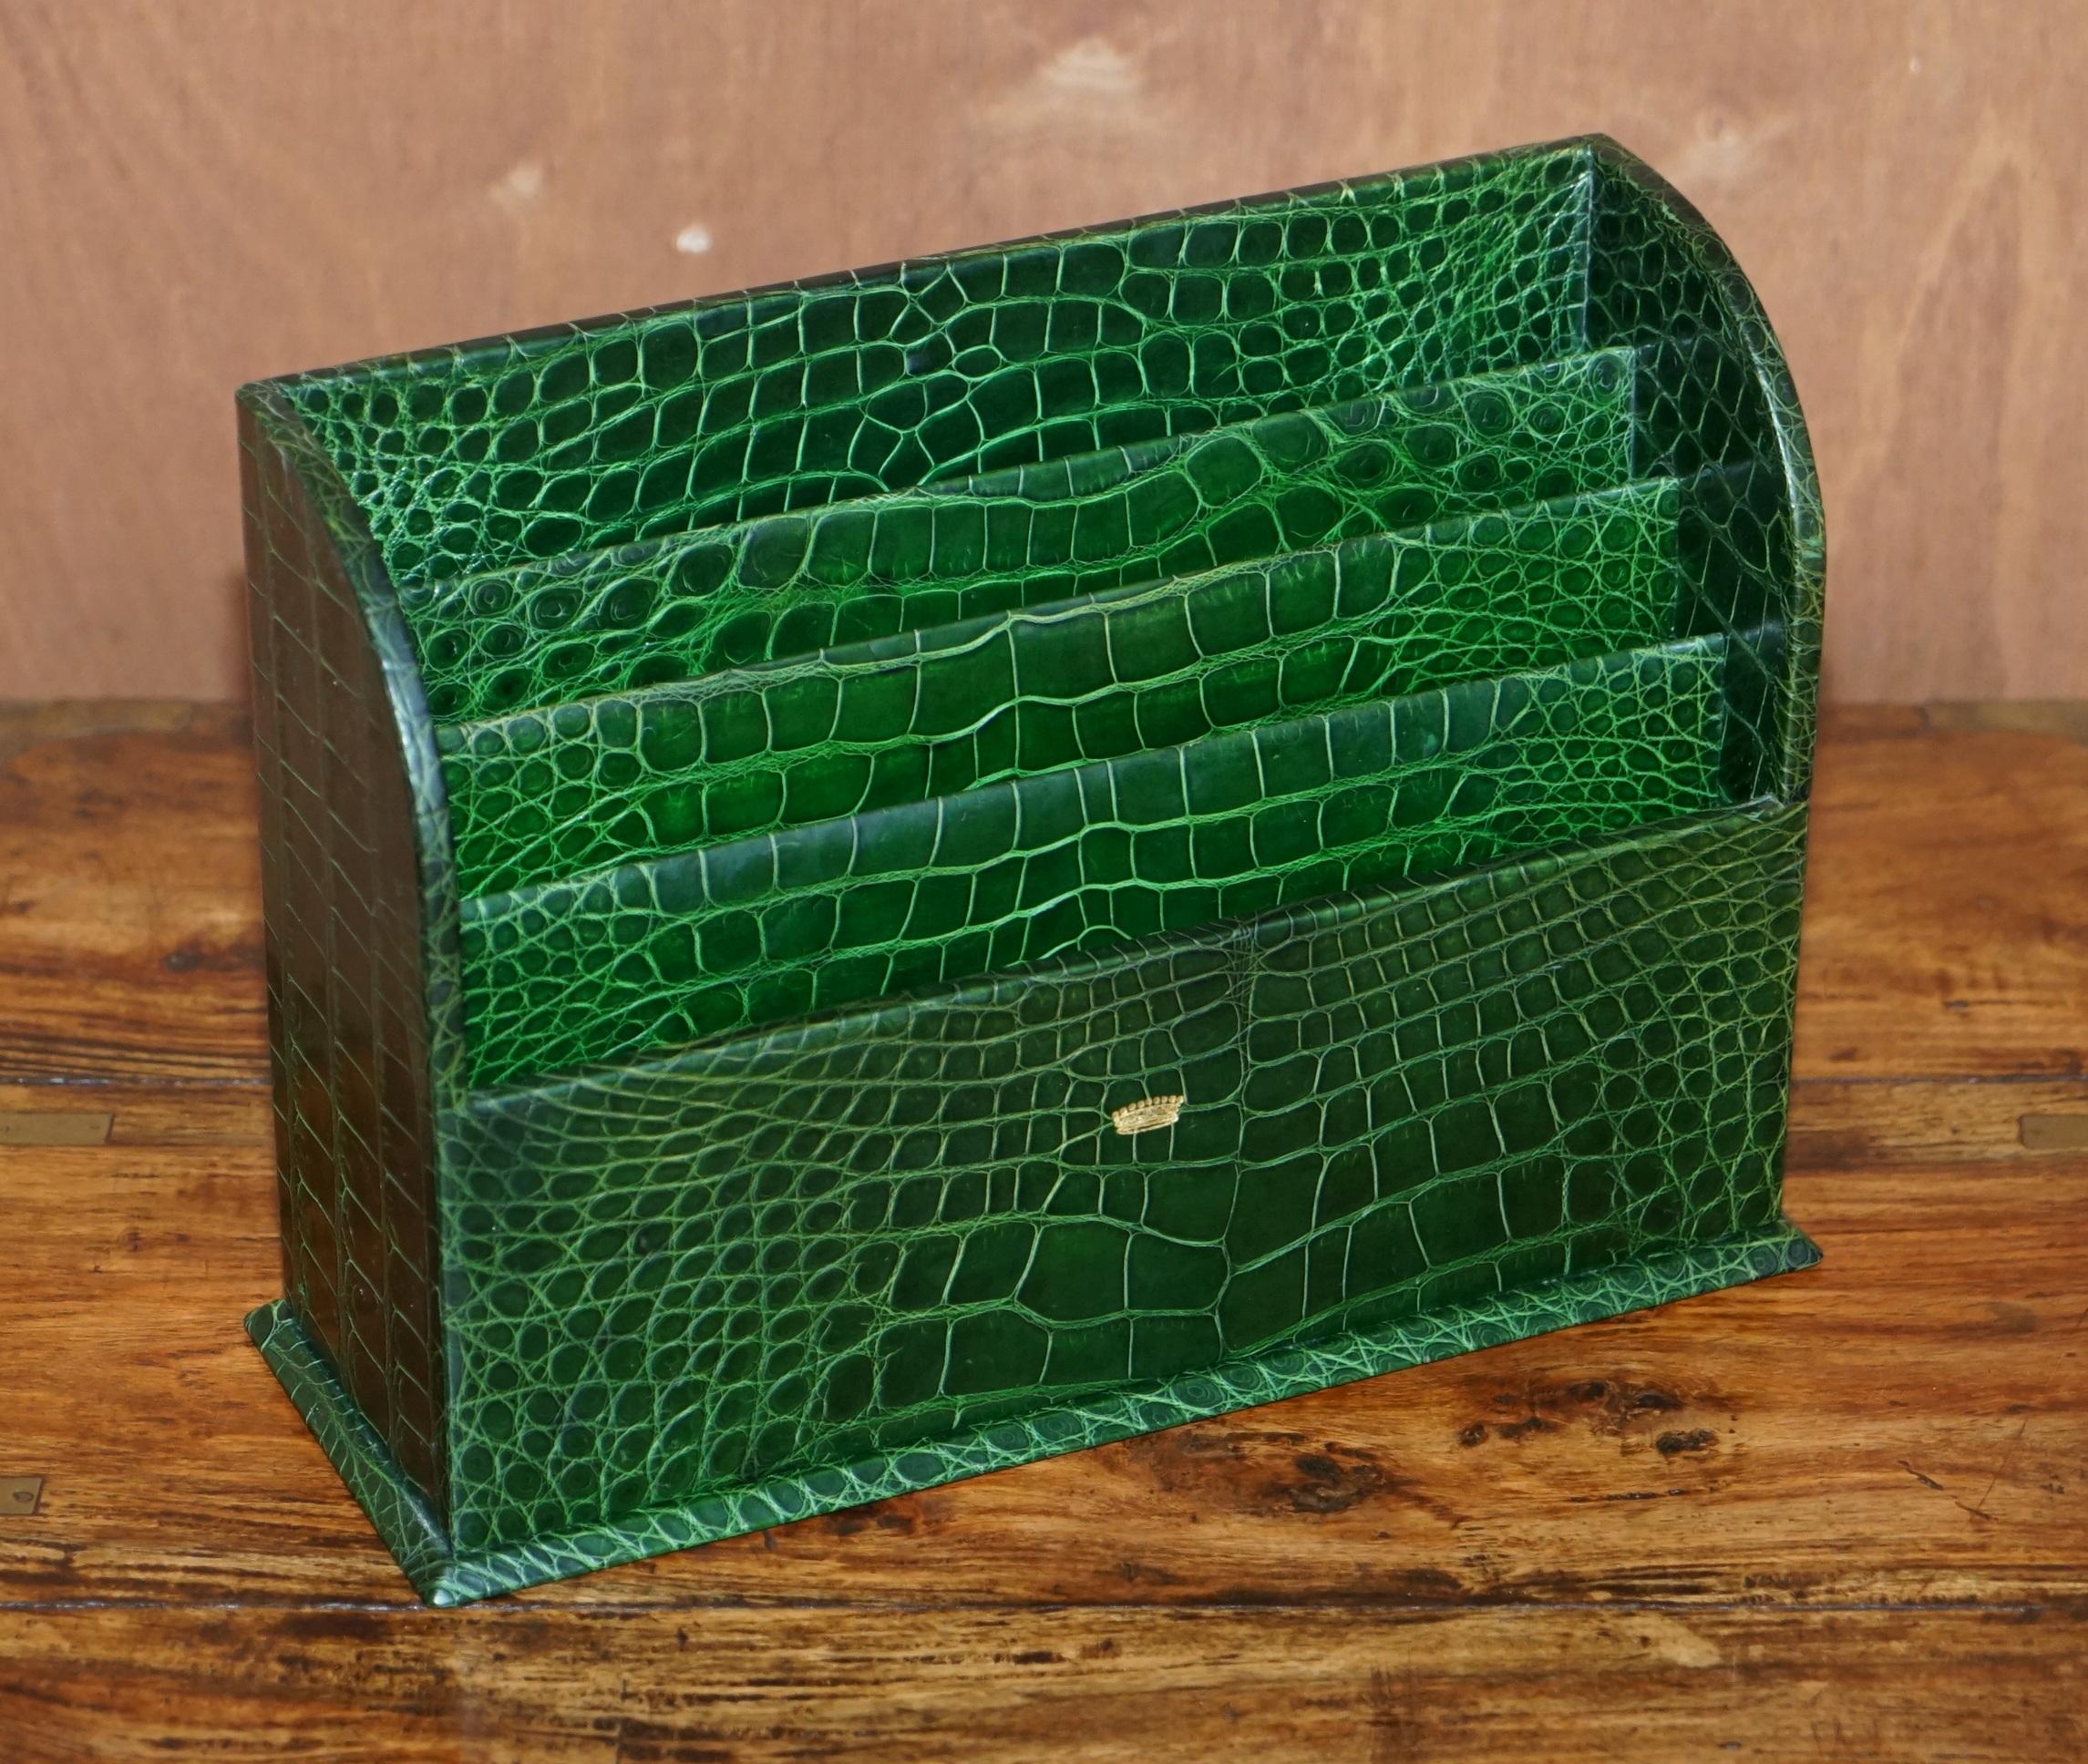 Wir freuen uns, dieses einzigartige, von einem polnischen Grafen auf Bestellung gefertigte Stück aus grünem Asprey-Krokodilleder mit eingelegter Krone aus 24-karätigem Gold und Schreibtischgarnitur zum Verkauf anzubieten

Dies ist so ziemlich das